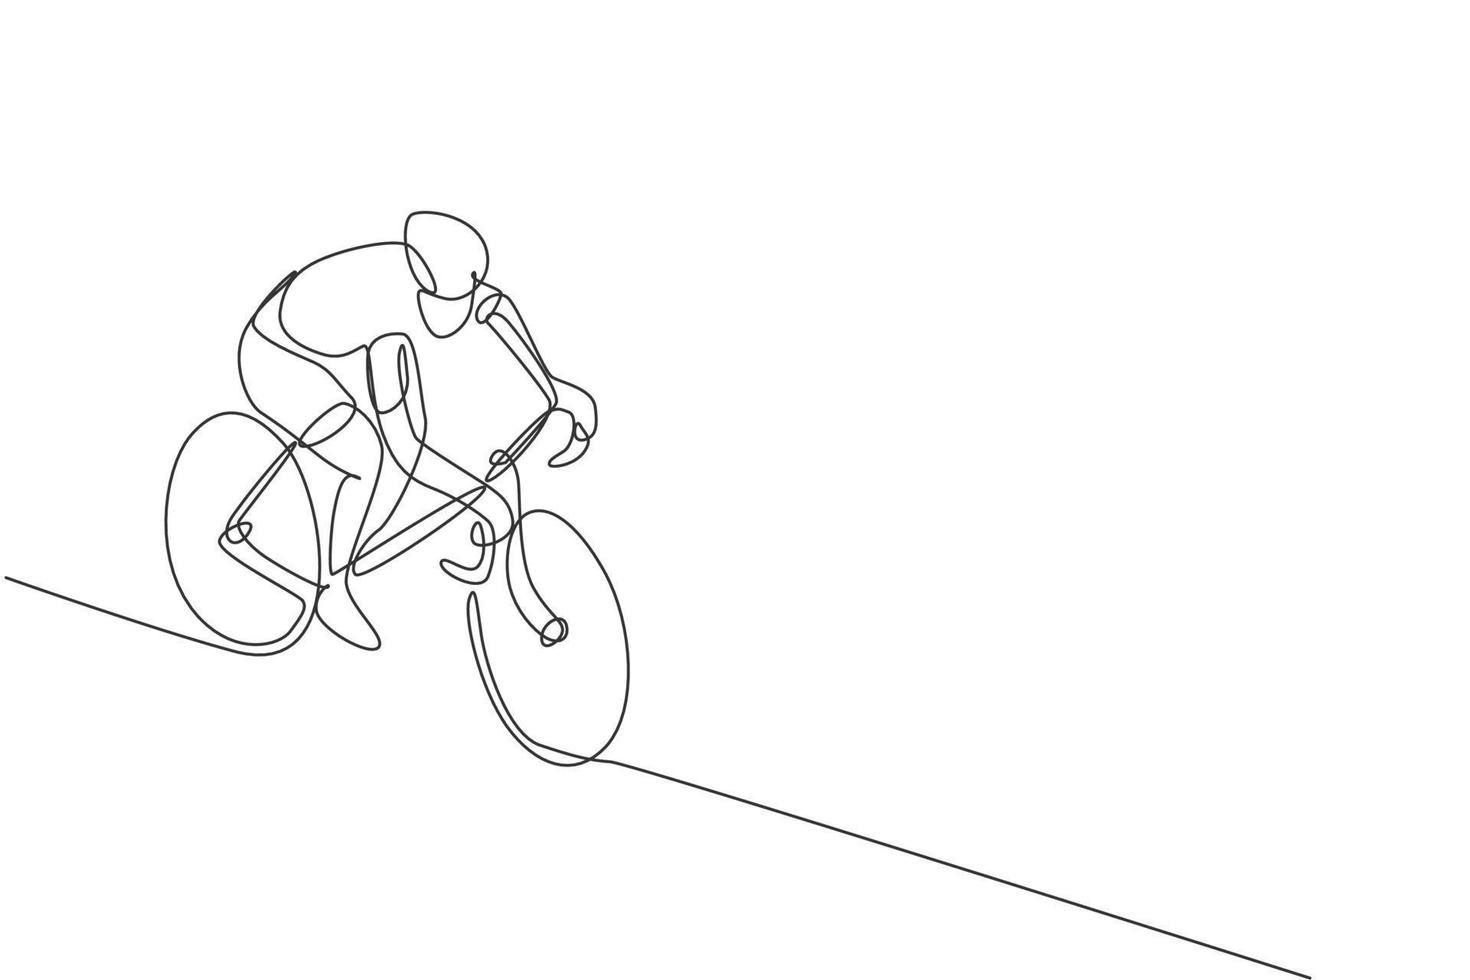 eine einzige Strichzeichnung eines jungen, energischen Radrennfahrerrennens auf der Vektorgrafik der Radstrecke. Rennradfahrer-Konzept. modernes Design mit durchgehender Linie für das Banner des Radsportturniers vektor